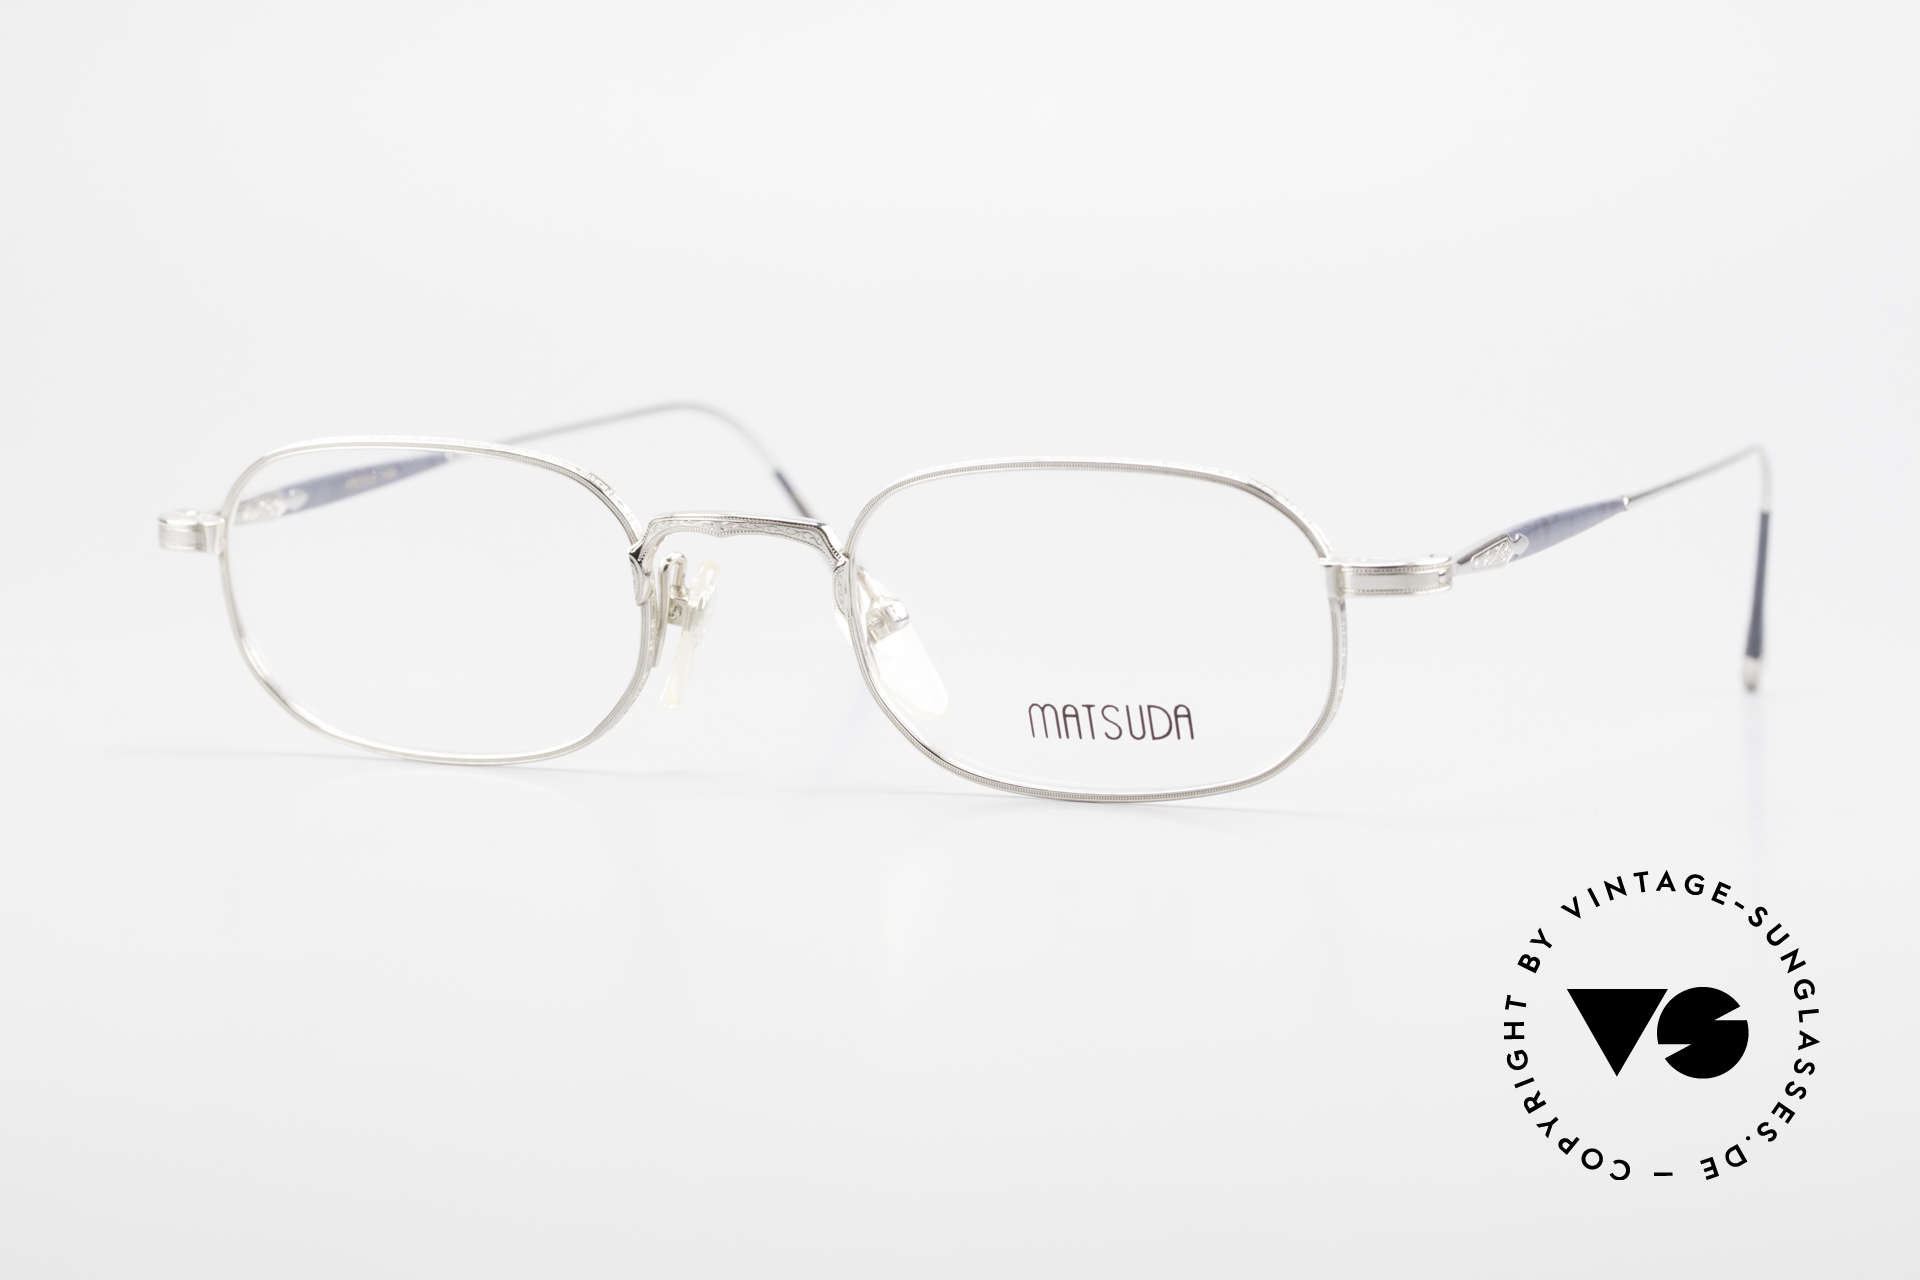 Matsuda 10108 90er Herrenbrille High End, VINTAGE Matsuda Brille 10108 aus den frühen 1990ern, Passend für Herren